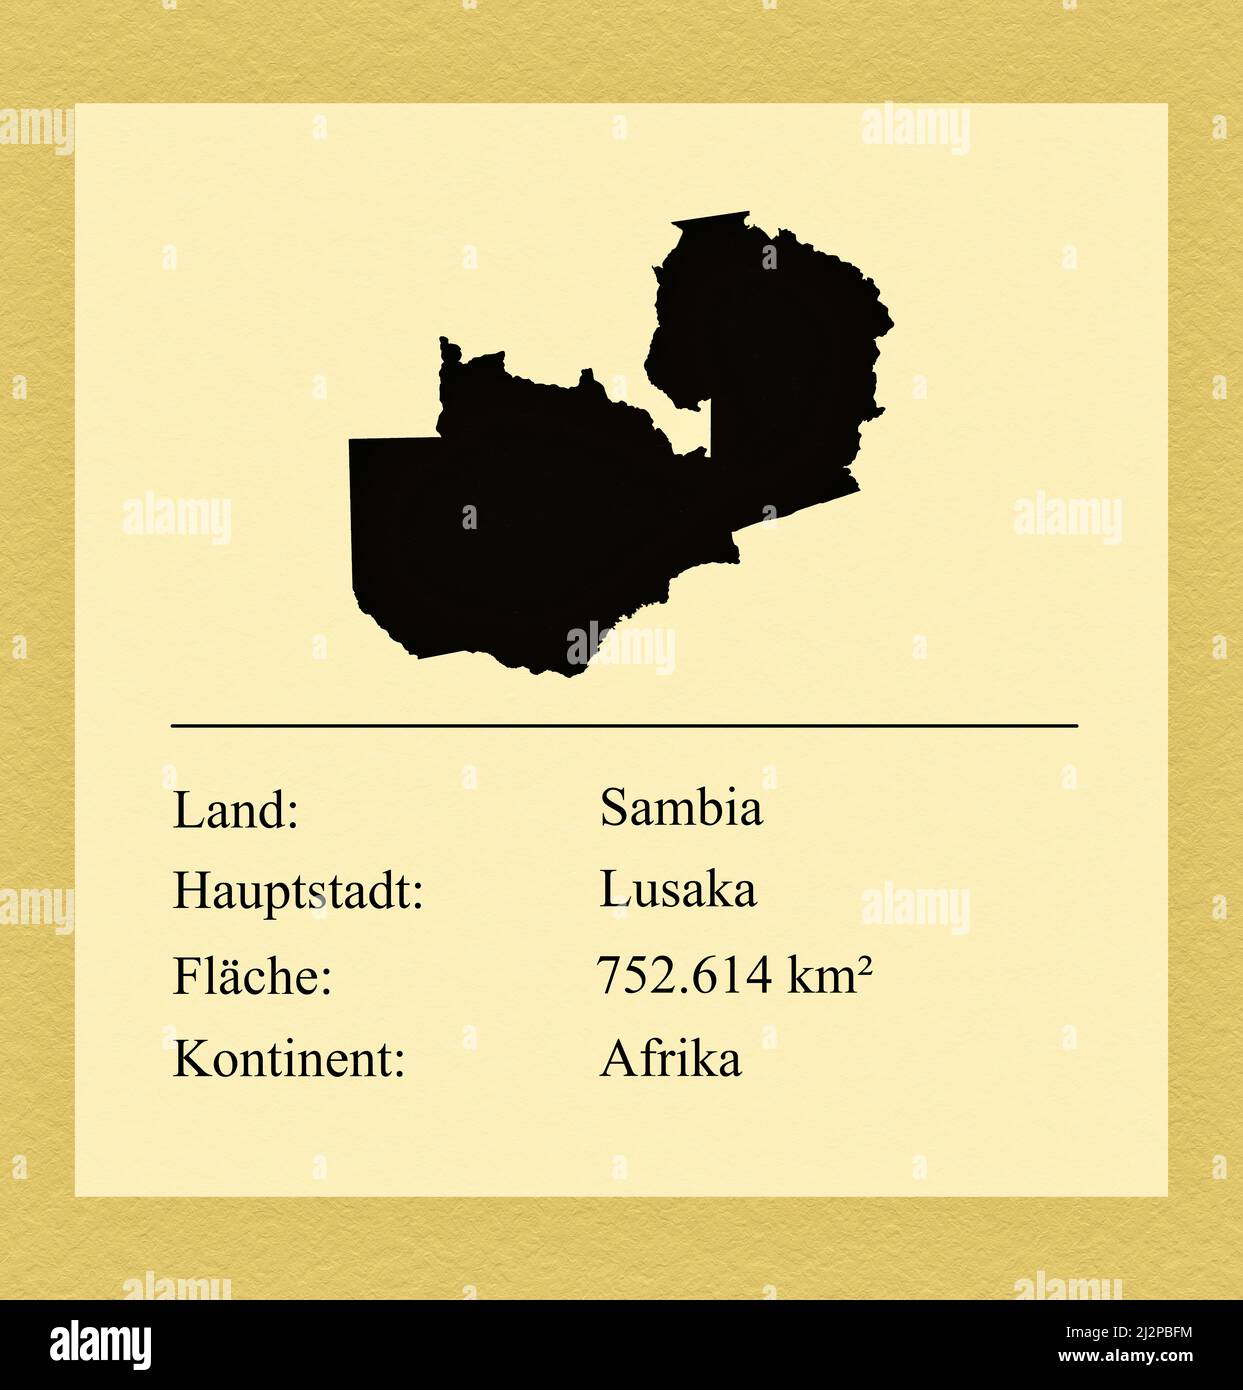 Umrisse des Landes Sambia, darunter ein kleiner Steckbrief mit Ländernamen, Hauptstadt, Fläche und Kontinent Foto de stock